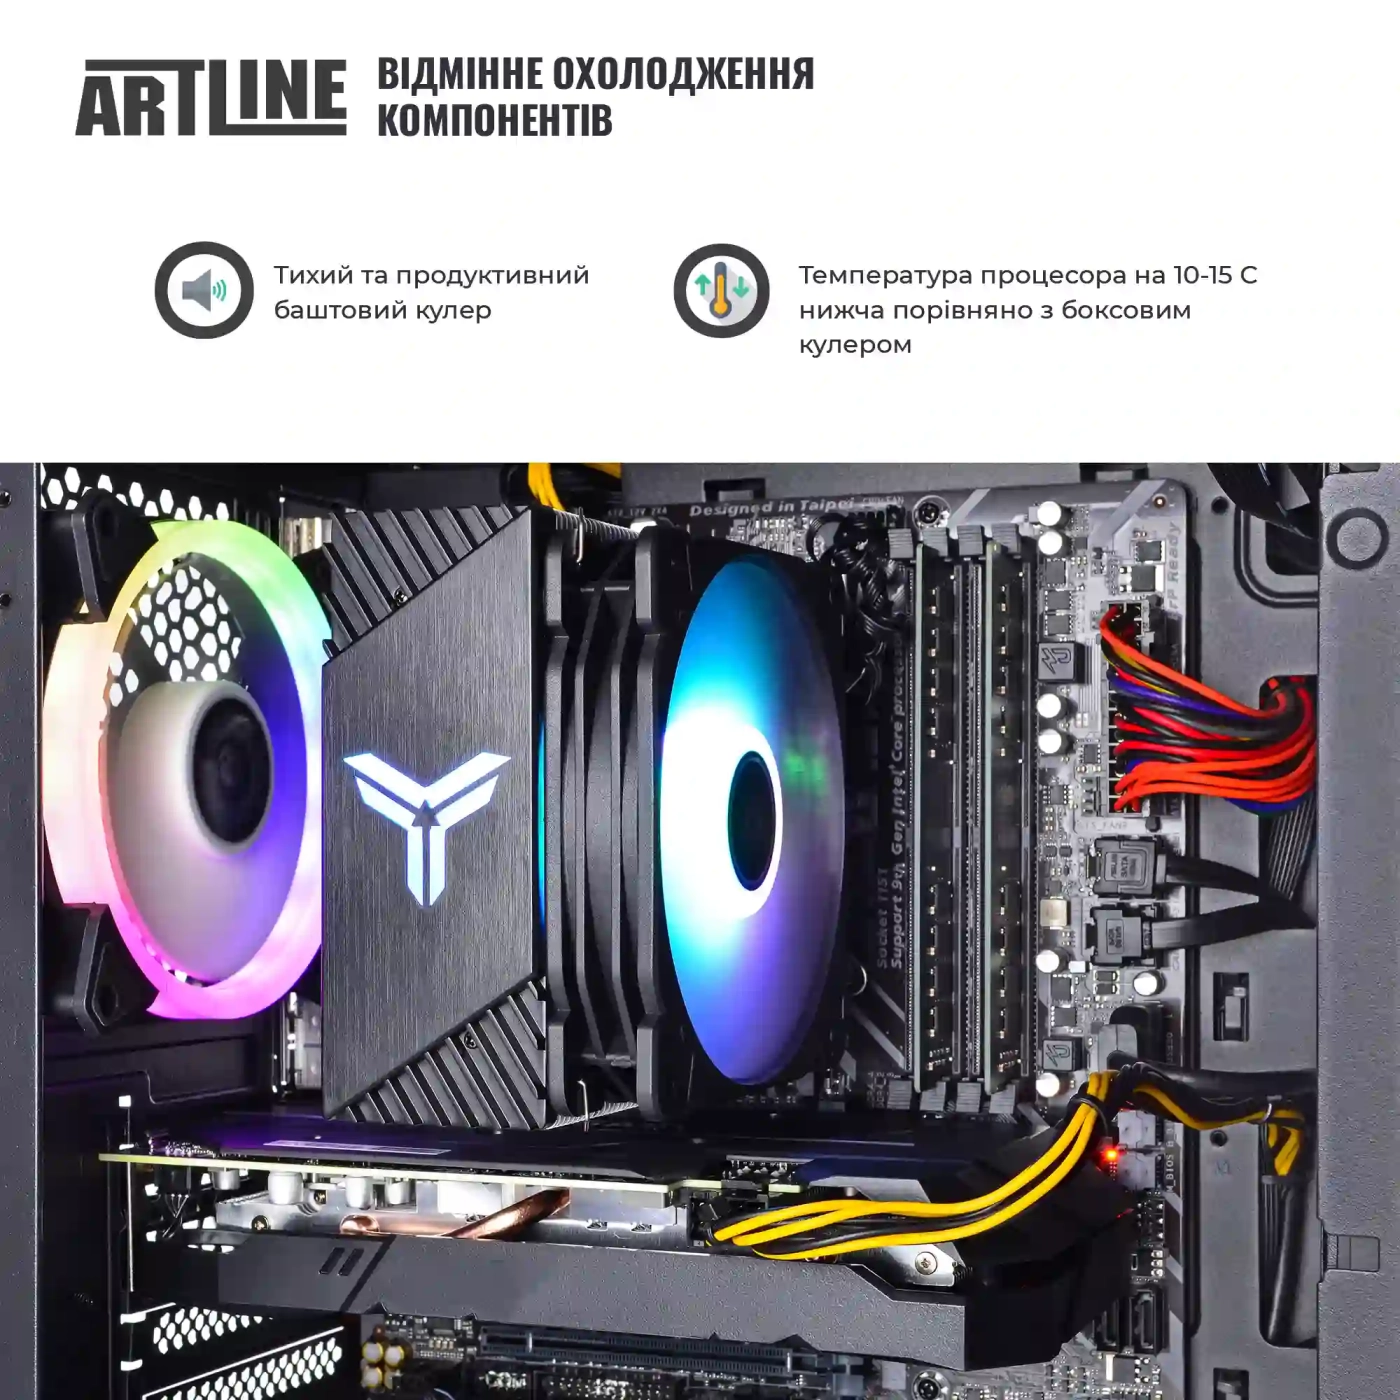 Купить Компьютер ARTLINE Gaming X49v12 - фото 3